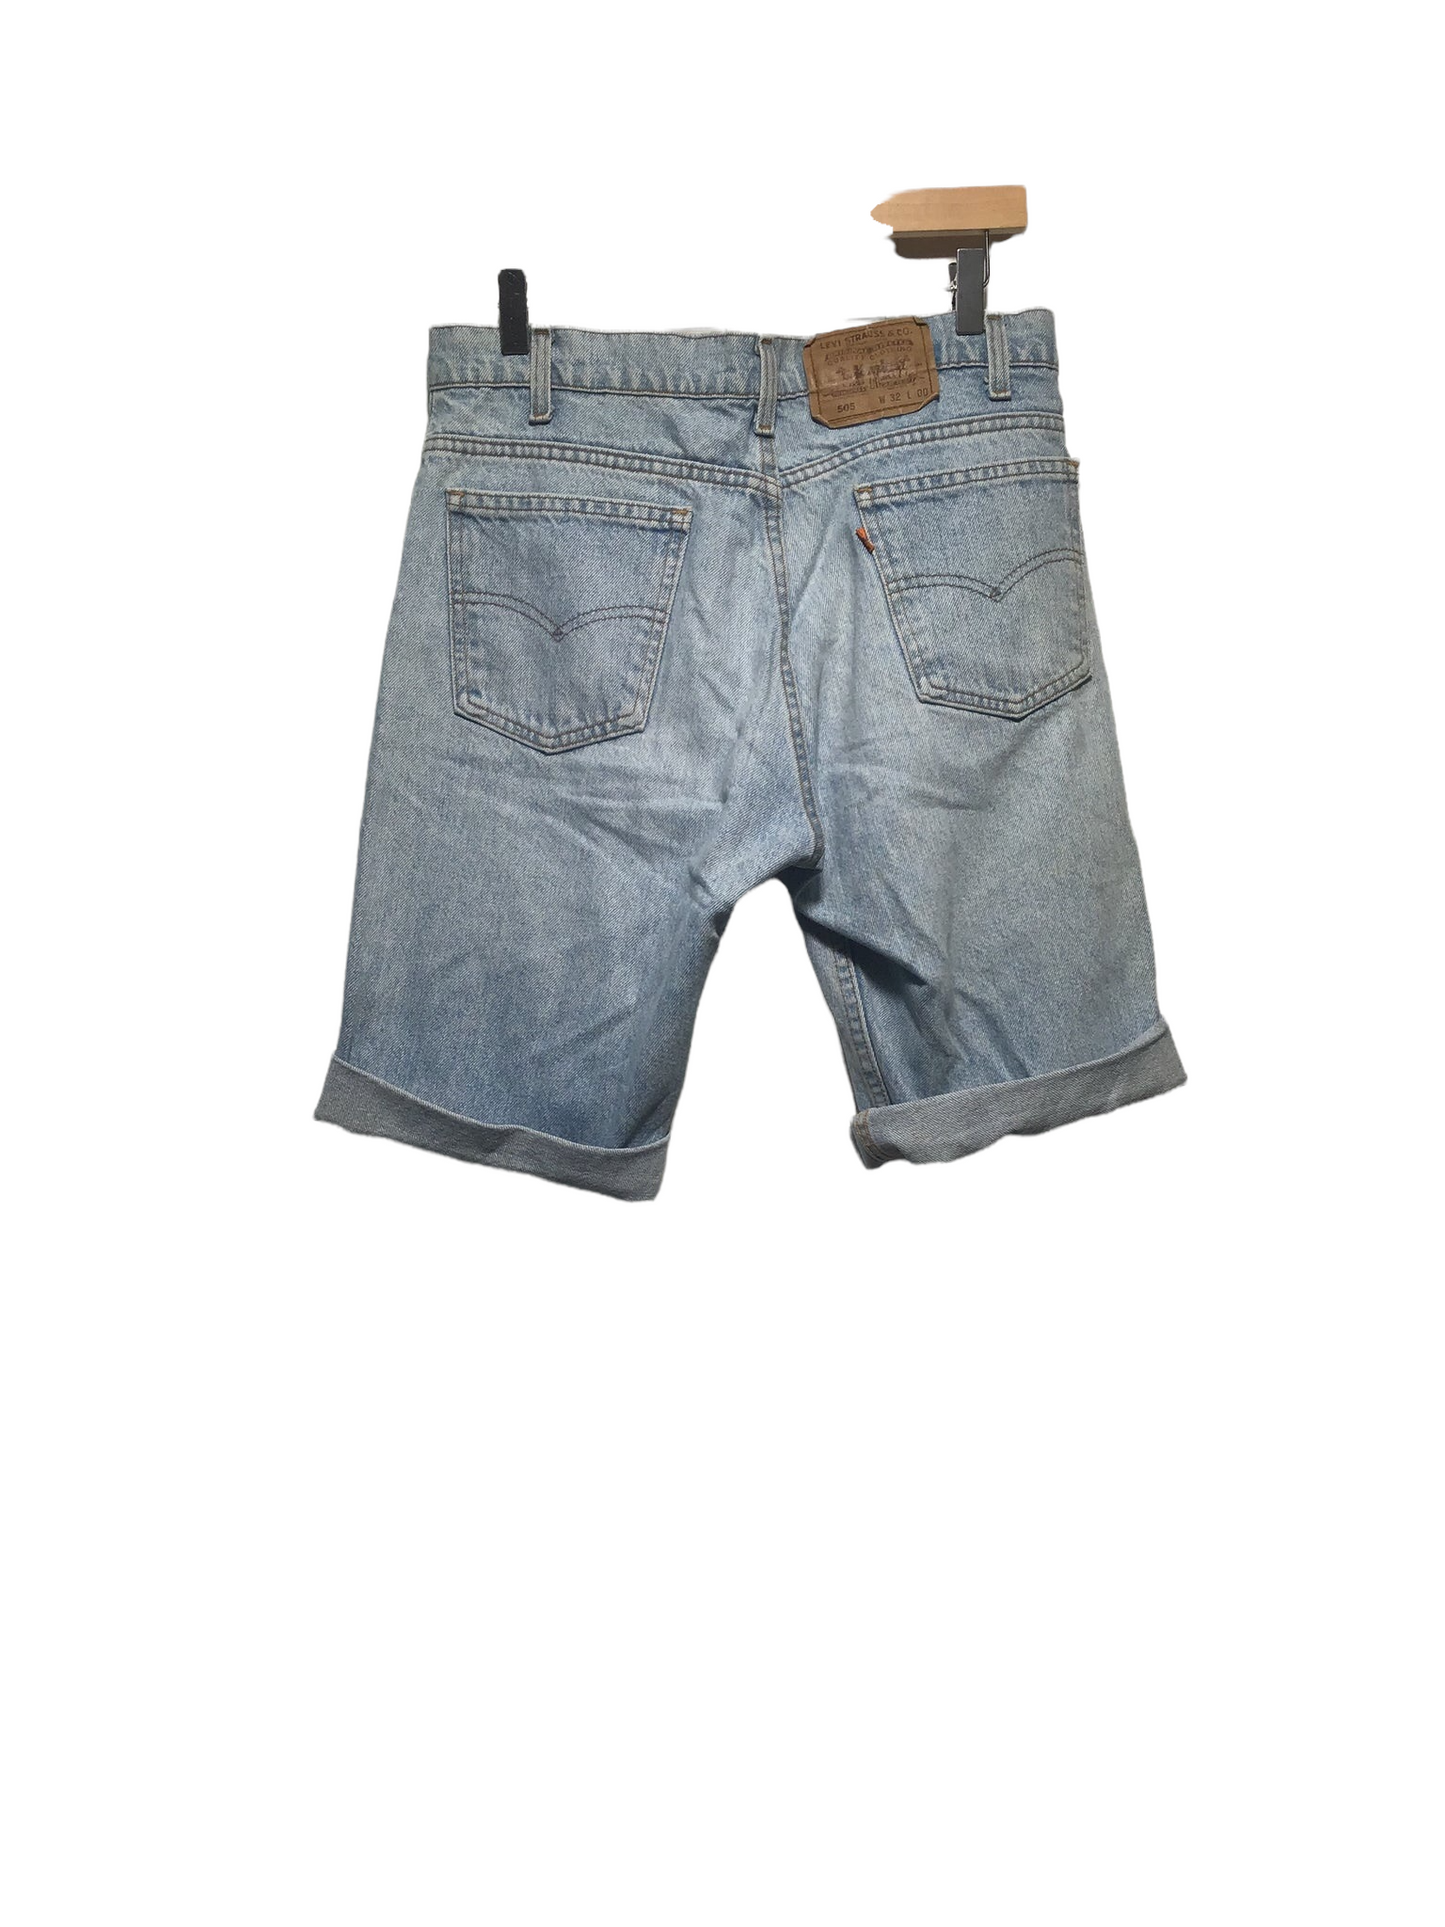 Levi Denim Shorts (Size 32" Waist)